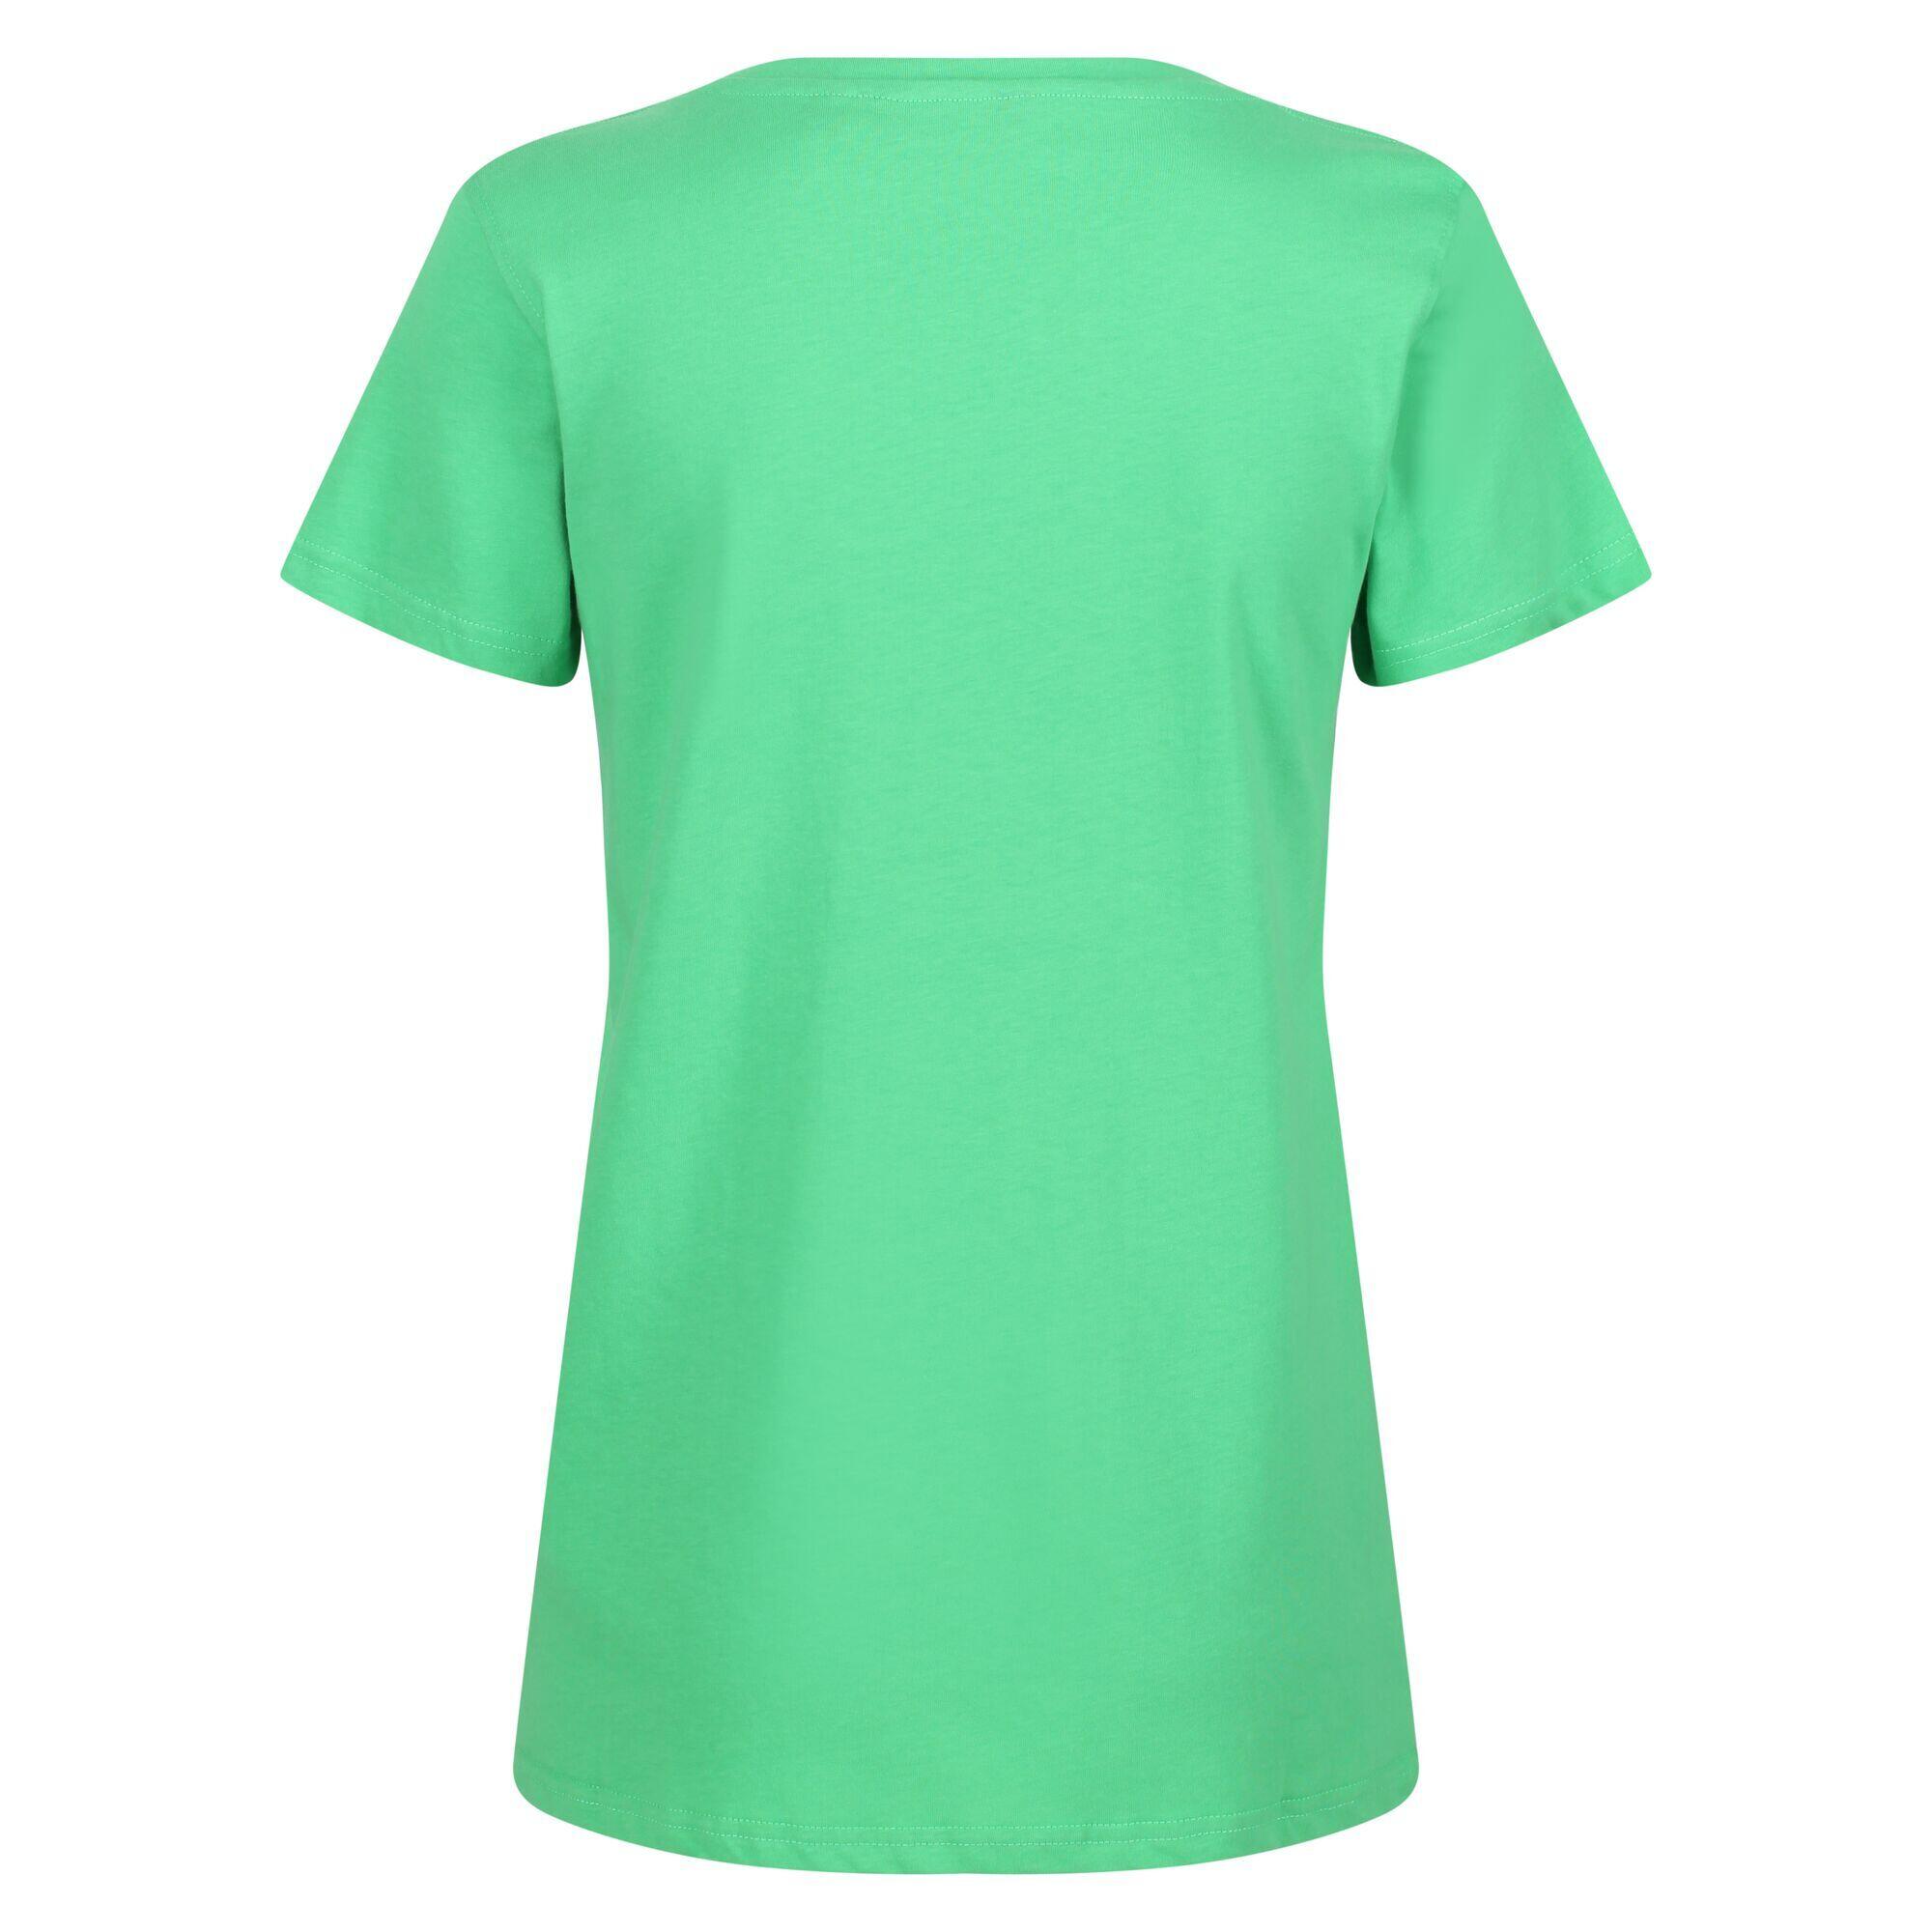 Womens/Ladies Filandra VI Seashells TShirt (Vibrant Green) 2/5